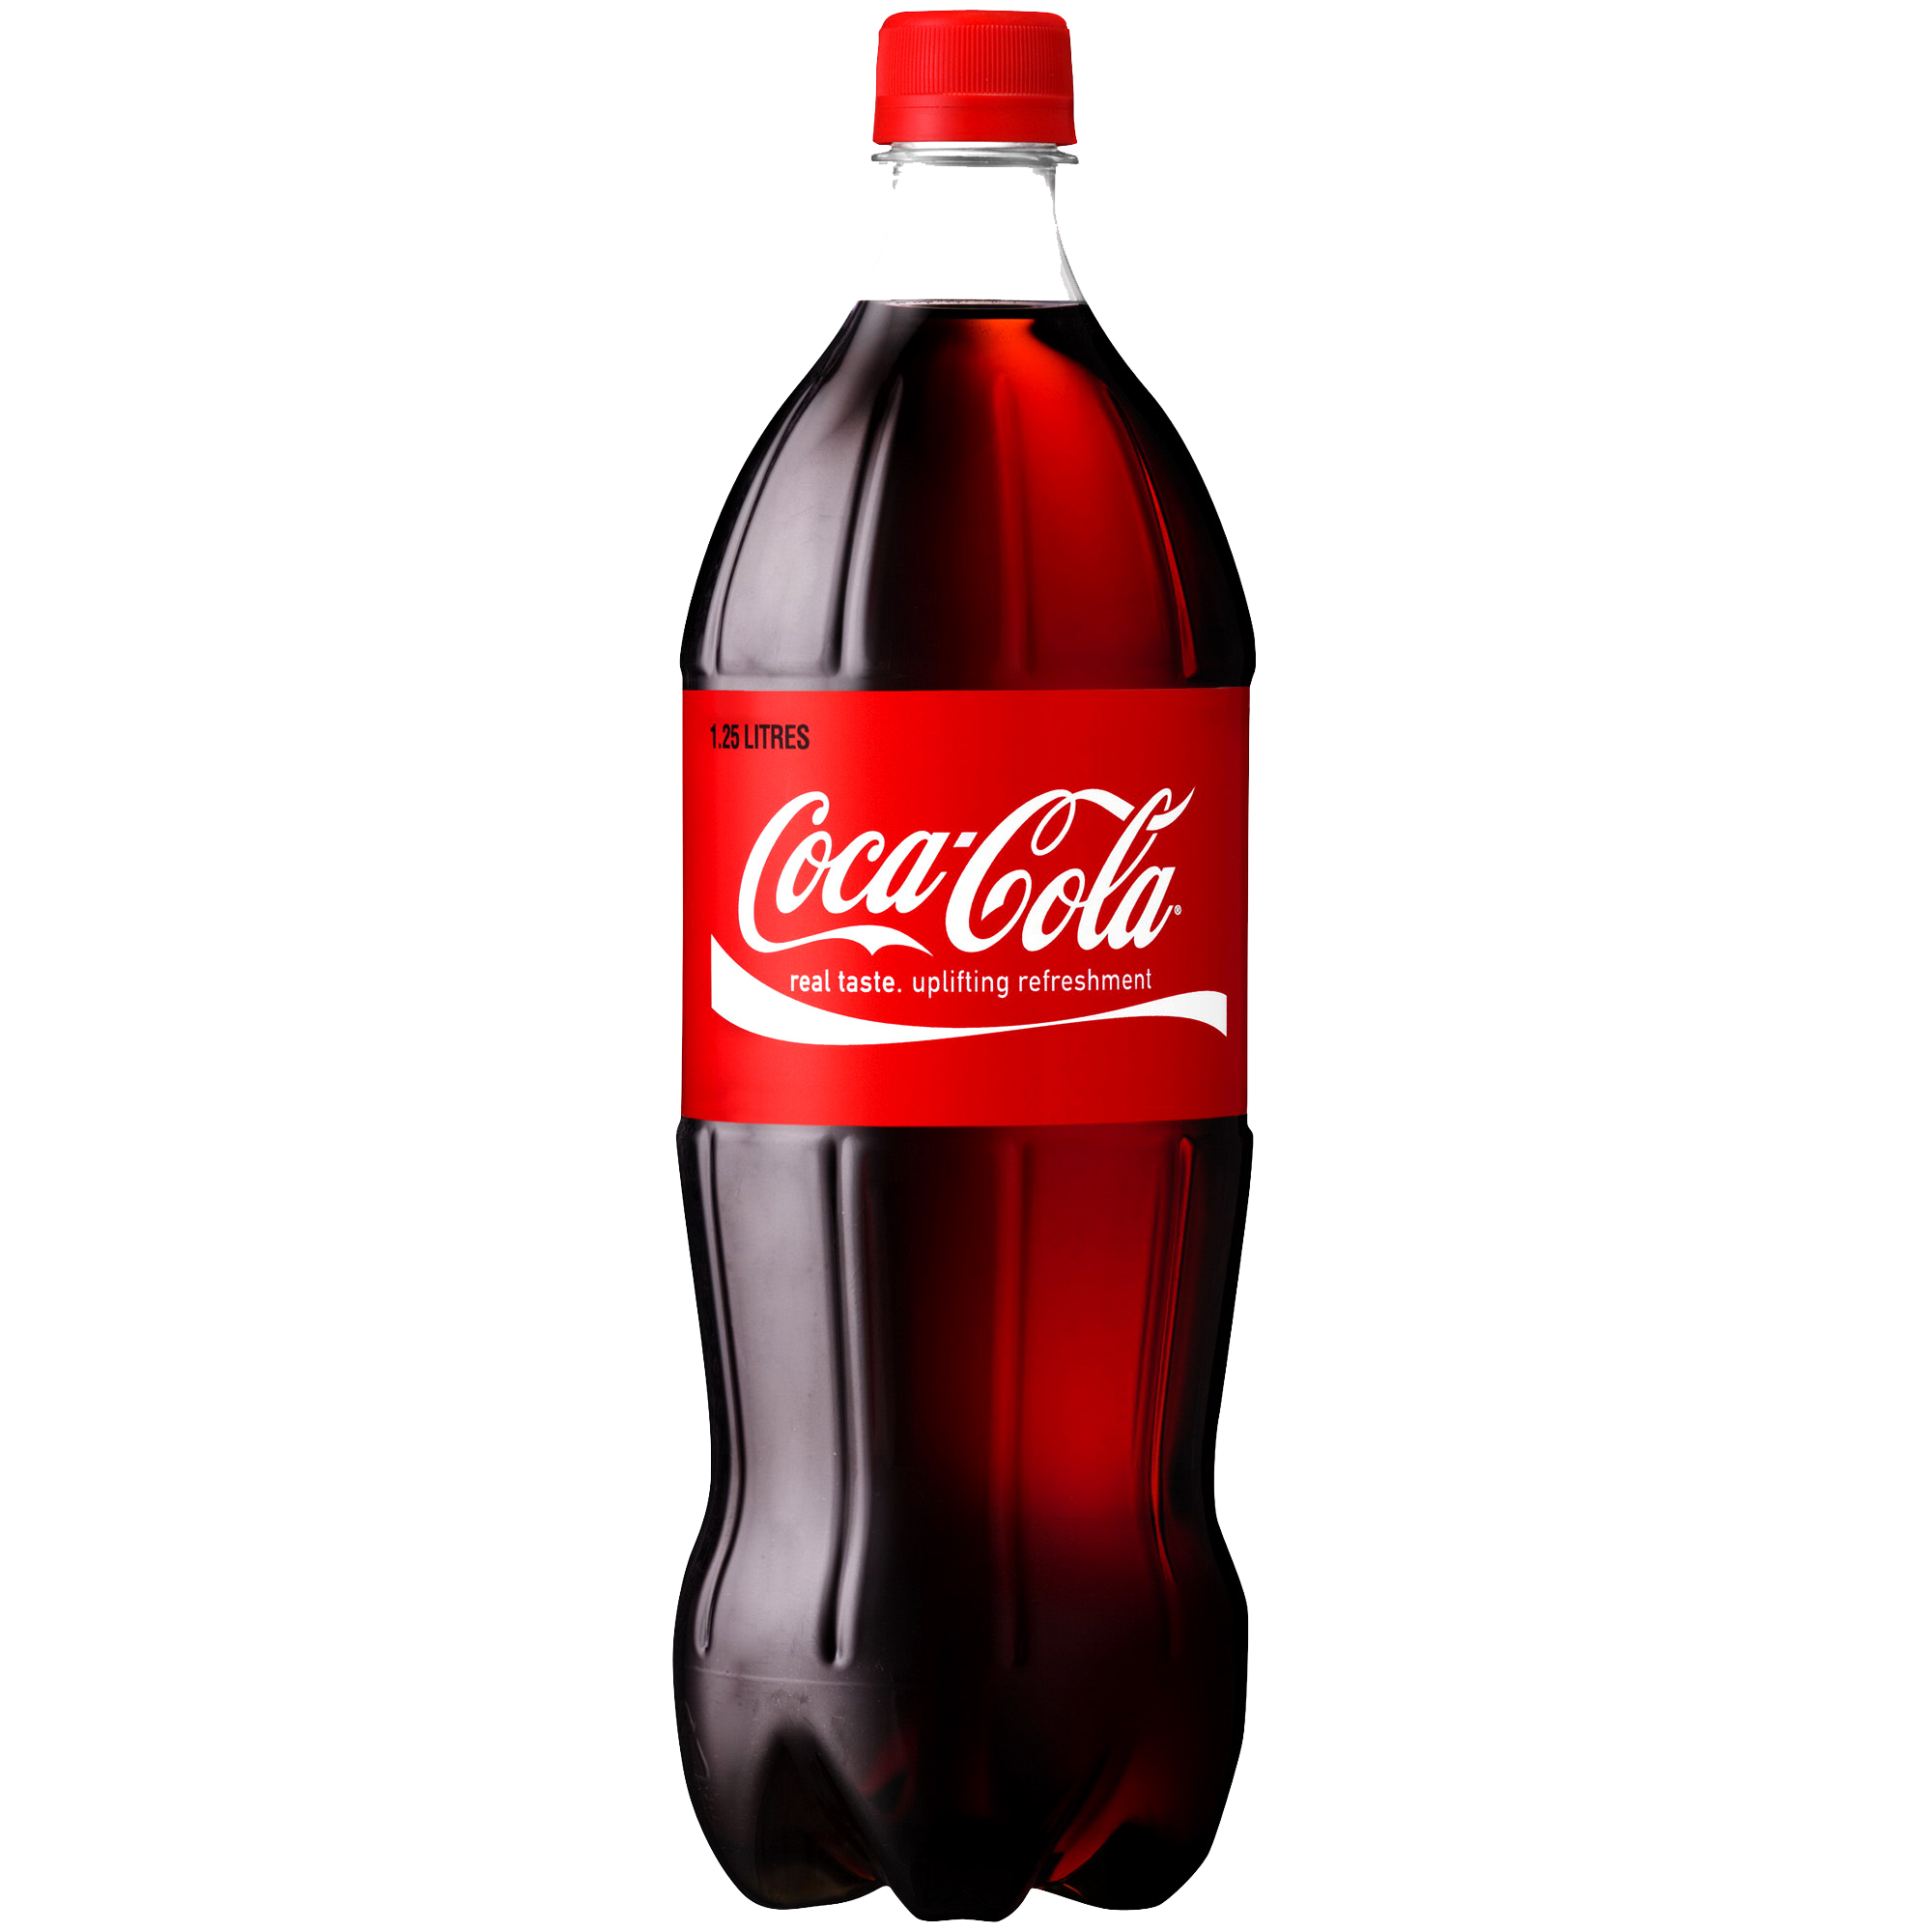 Coca-Cola Transparent PNG Ima